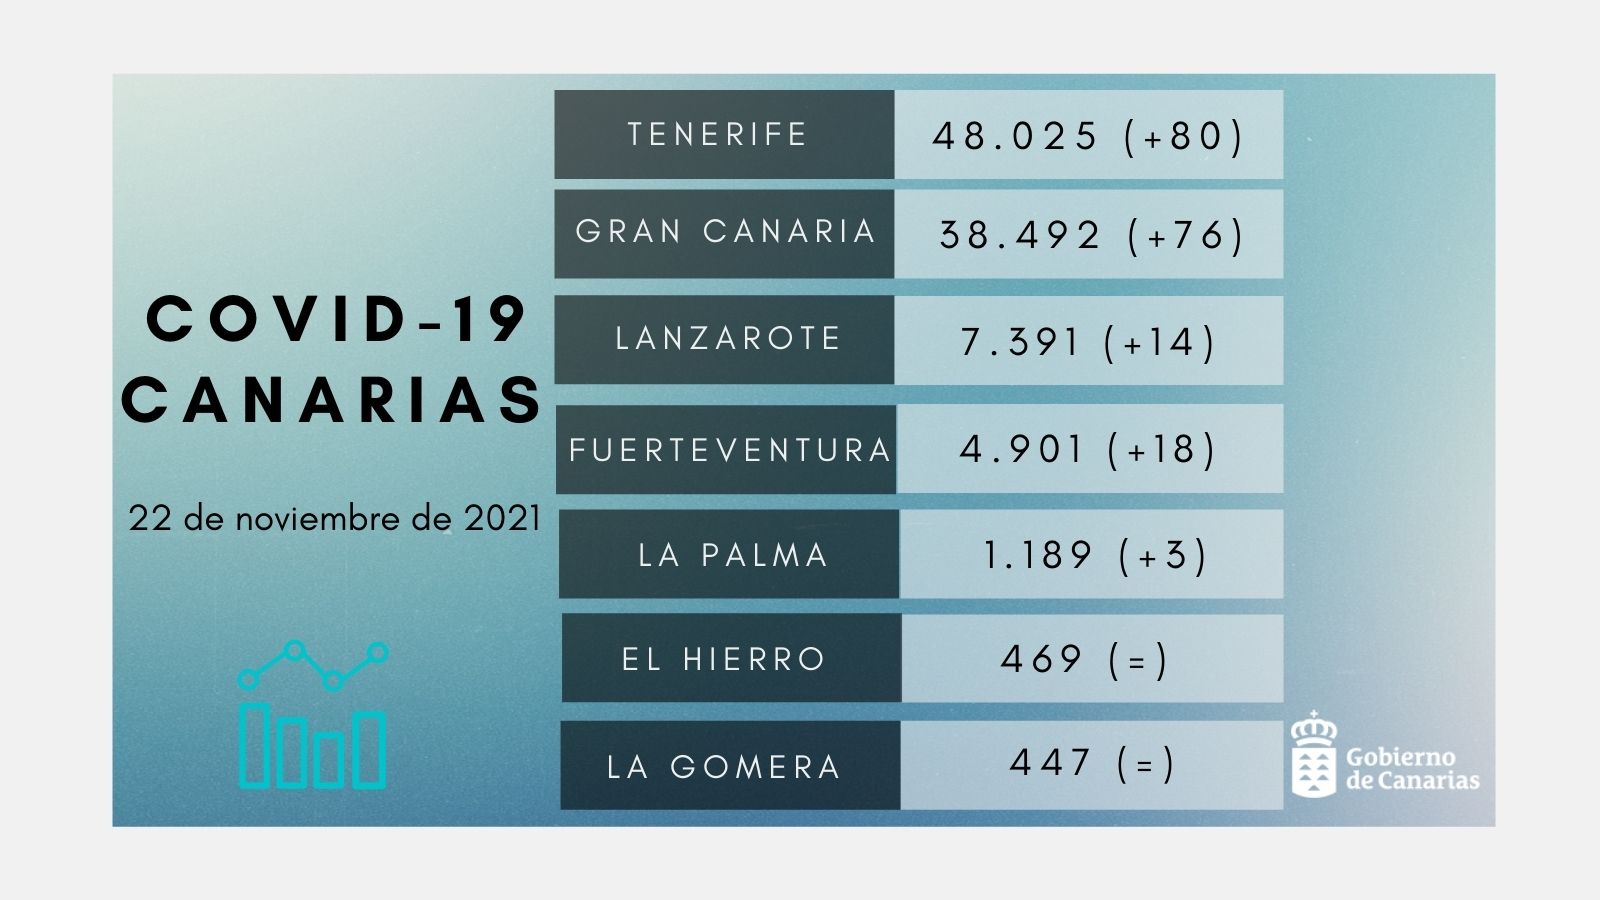 Sanidad ha notificado que se han registrado 191 casos en Canarias en las últimas 24 horas. Ayer se realizaron 3.394 pruebas diagnósticas